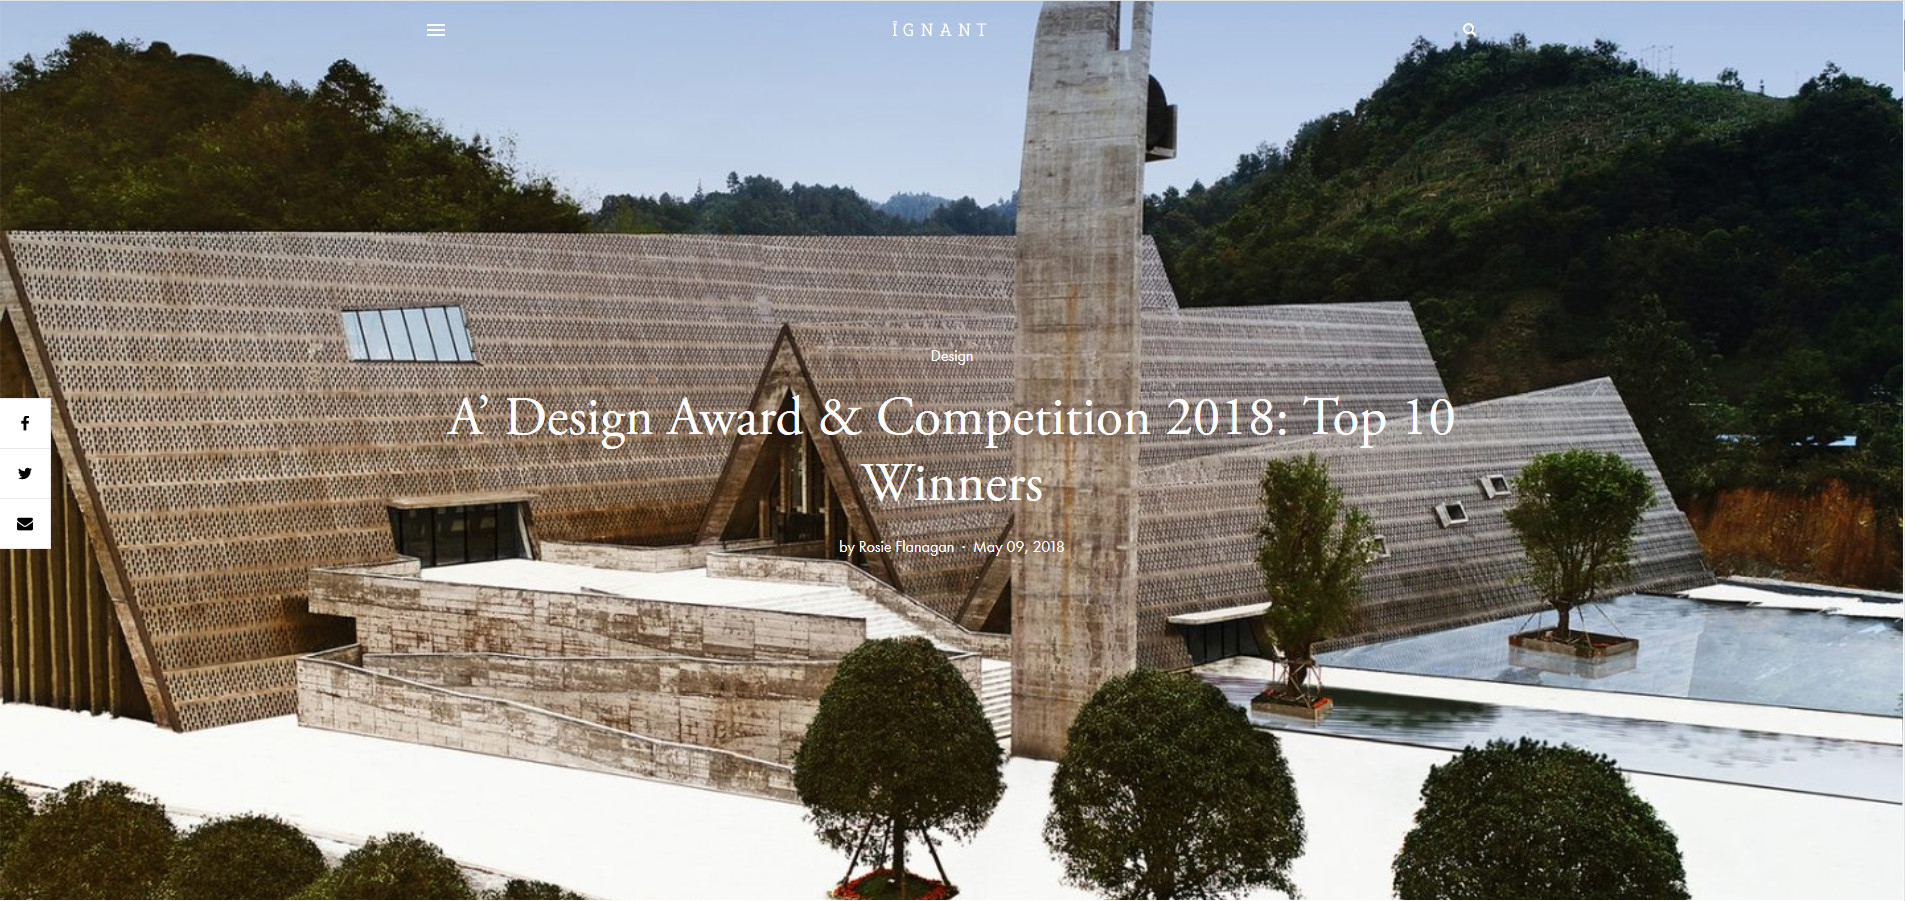 西线工作室作品龙门文化中心被评为2018年A' Design Award 设计大奖全球“Top 10 Winners”